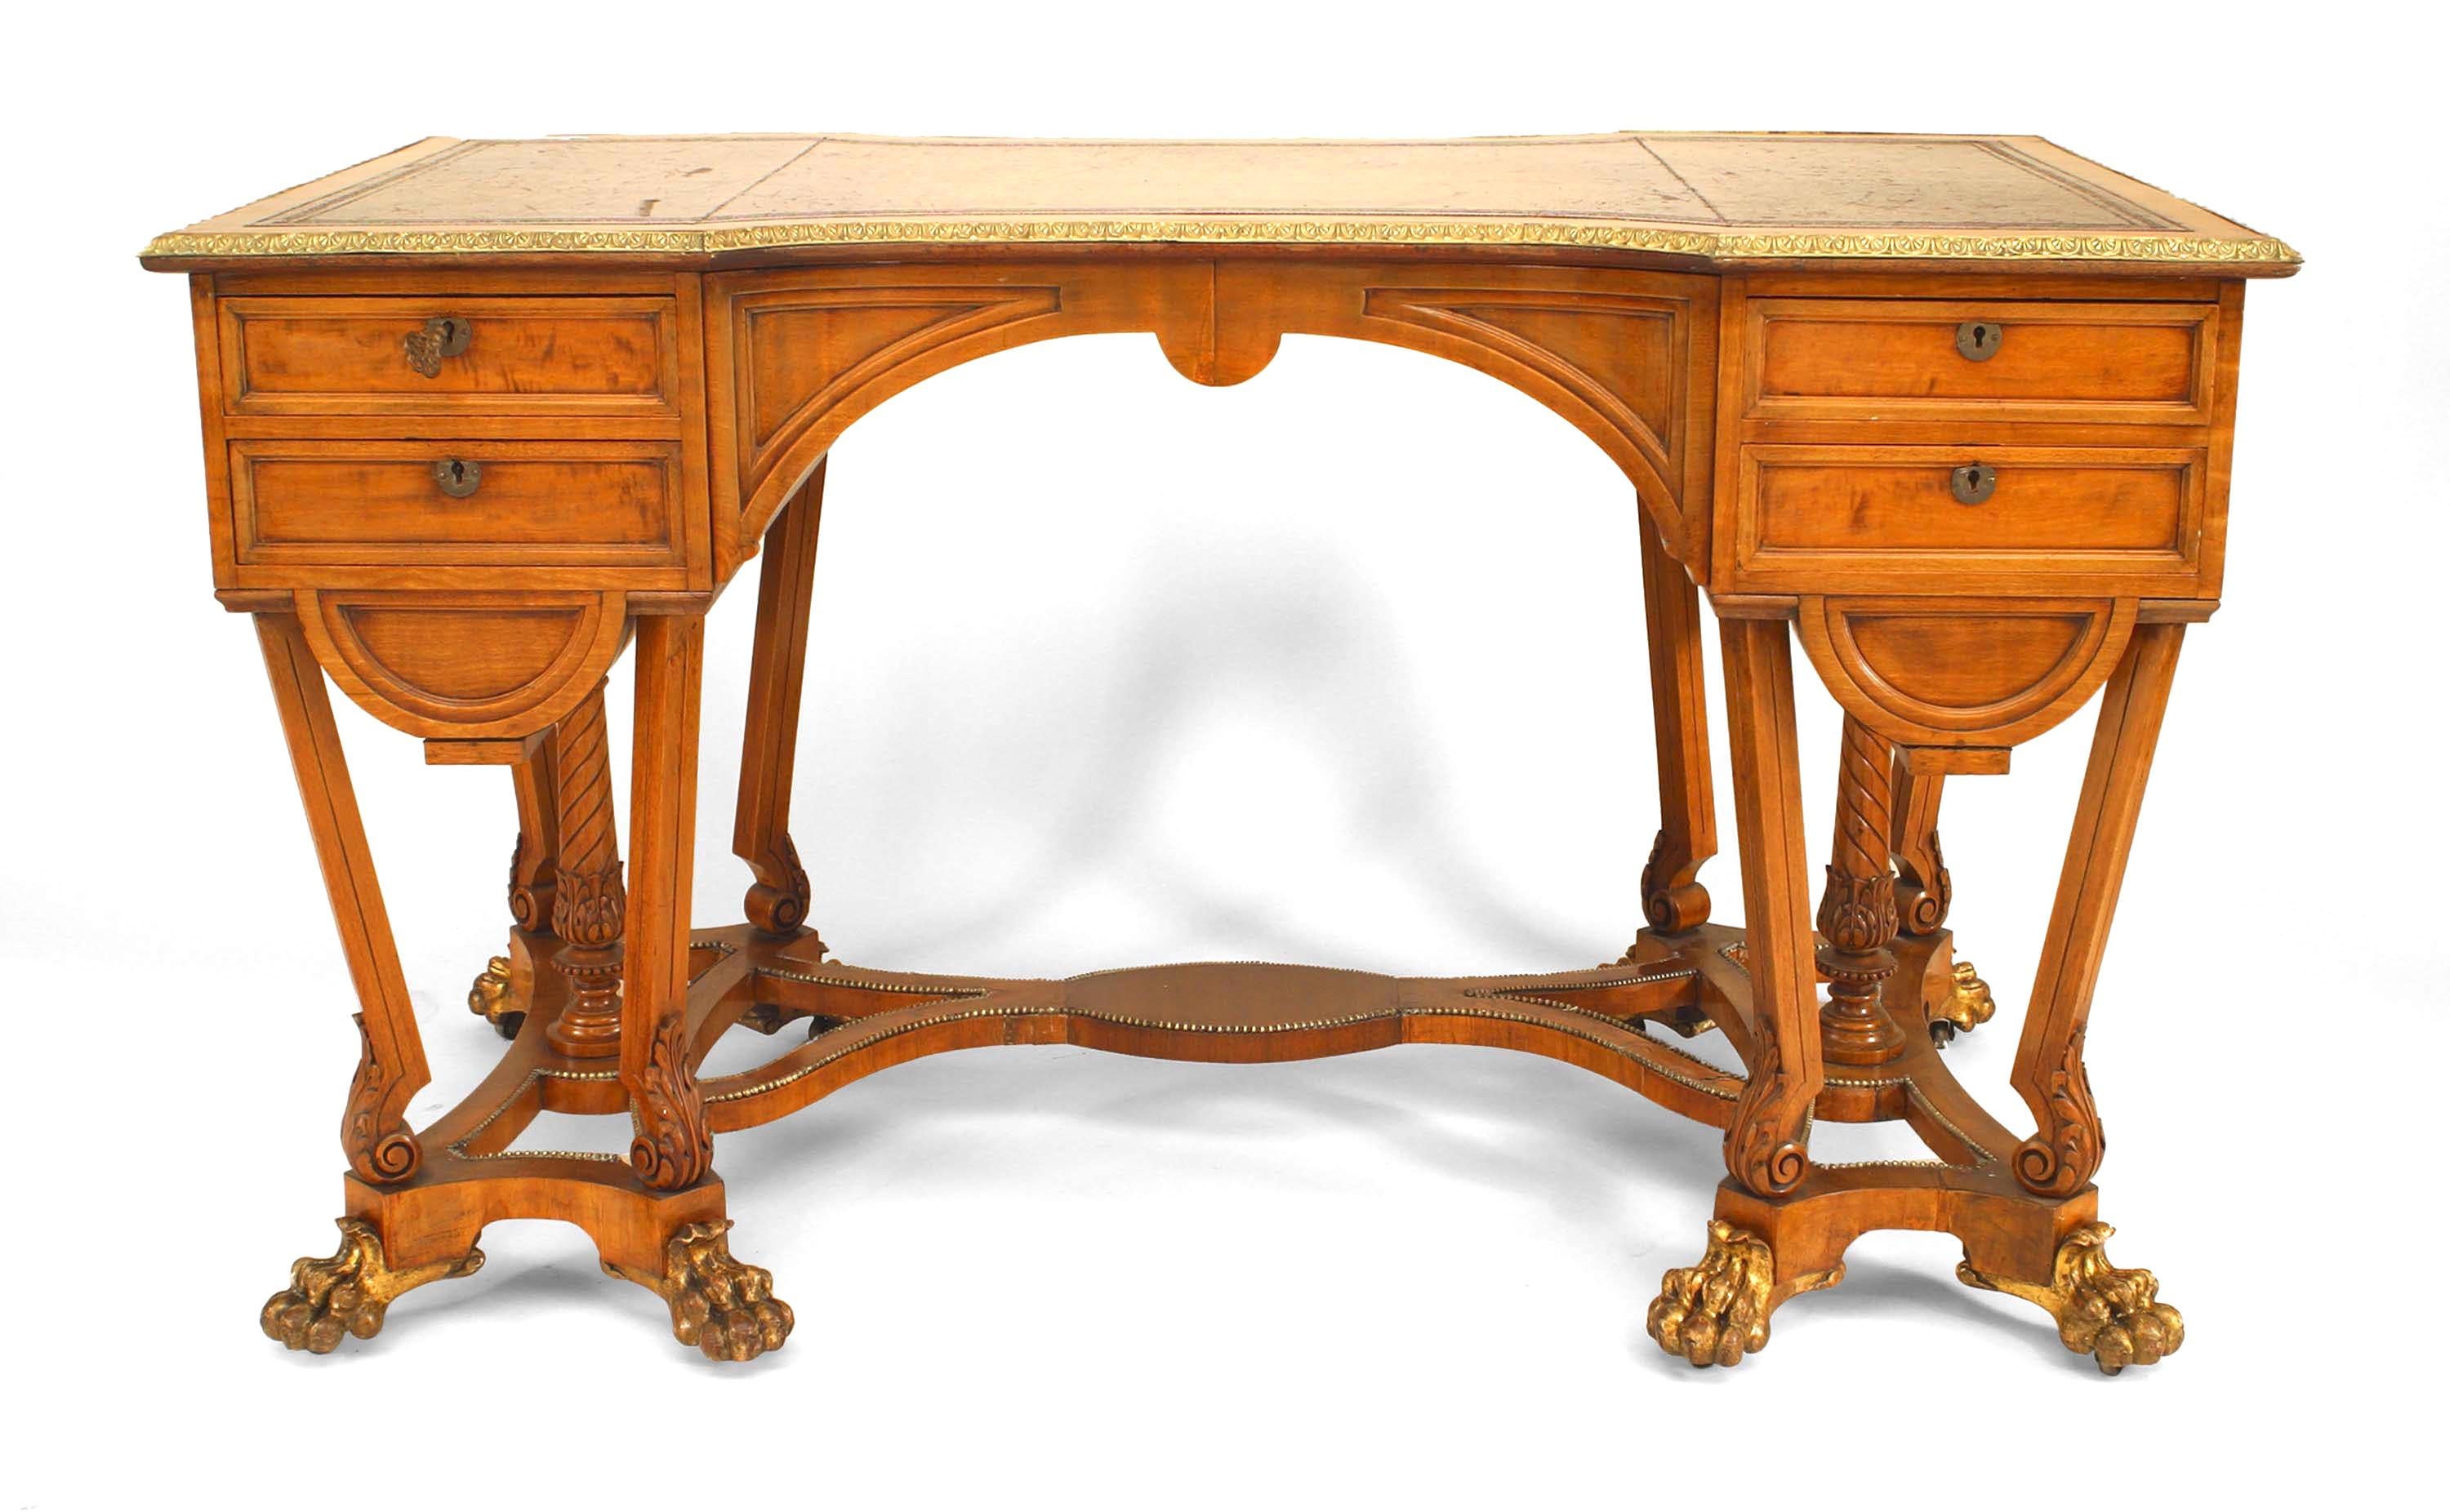 Englischer Schreibtisch im Regency-Stil (um 1850) mit vergoldetem Metallgestell aus satiniertem Holz mit eingesetzter brauner Lederplatte über Schubladen auf Beinen, die durch Bänder verbunden sind. (gestempelt EDWARDS AND ROBERTS).
